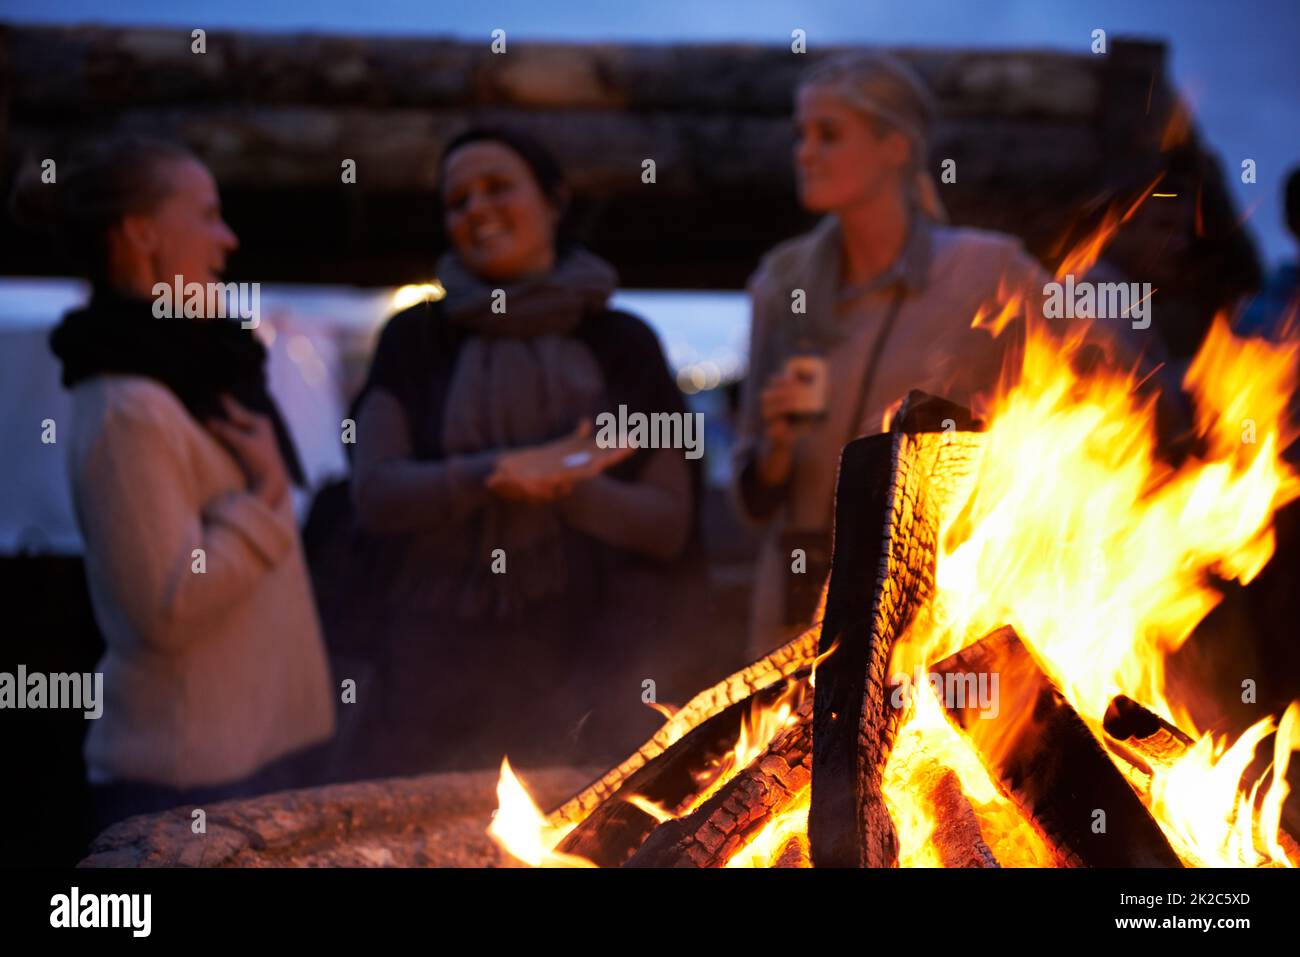 Ottenere un po 'di calore nella notte. Scatto corto di persone in piedi intorno ad un fuoco. Foto Stock